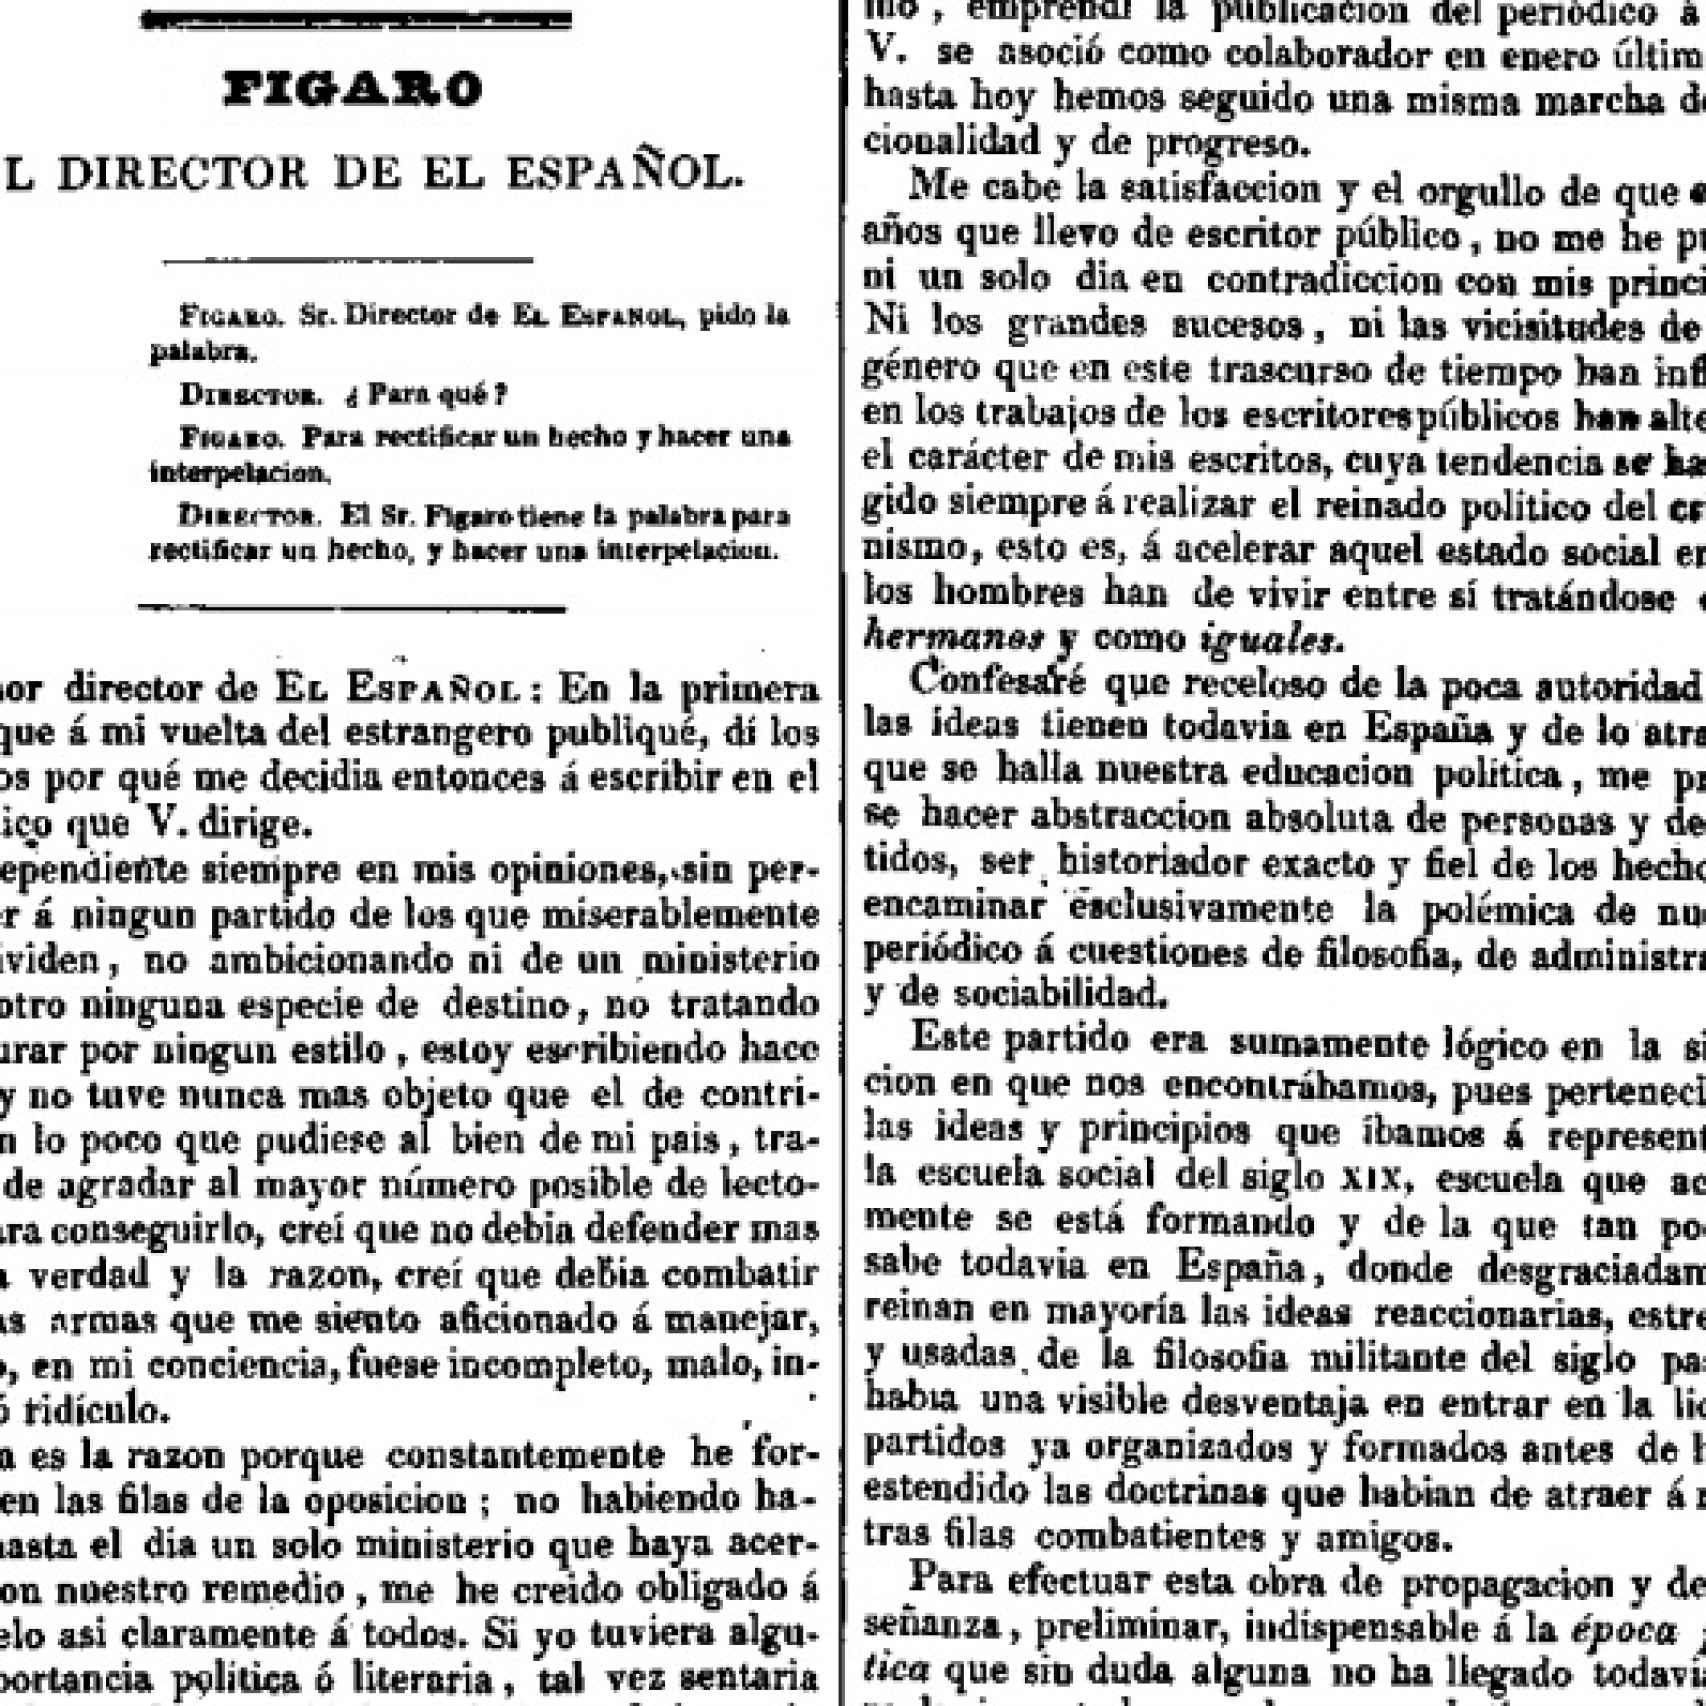 Figaro al director de El Español, 23.V.1836.